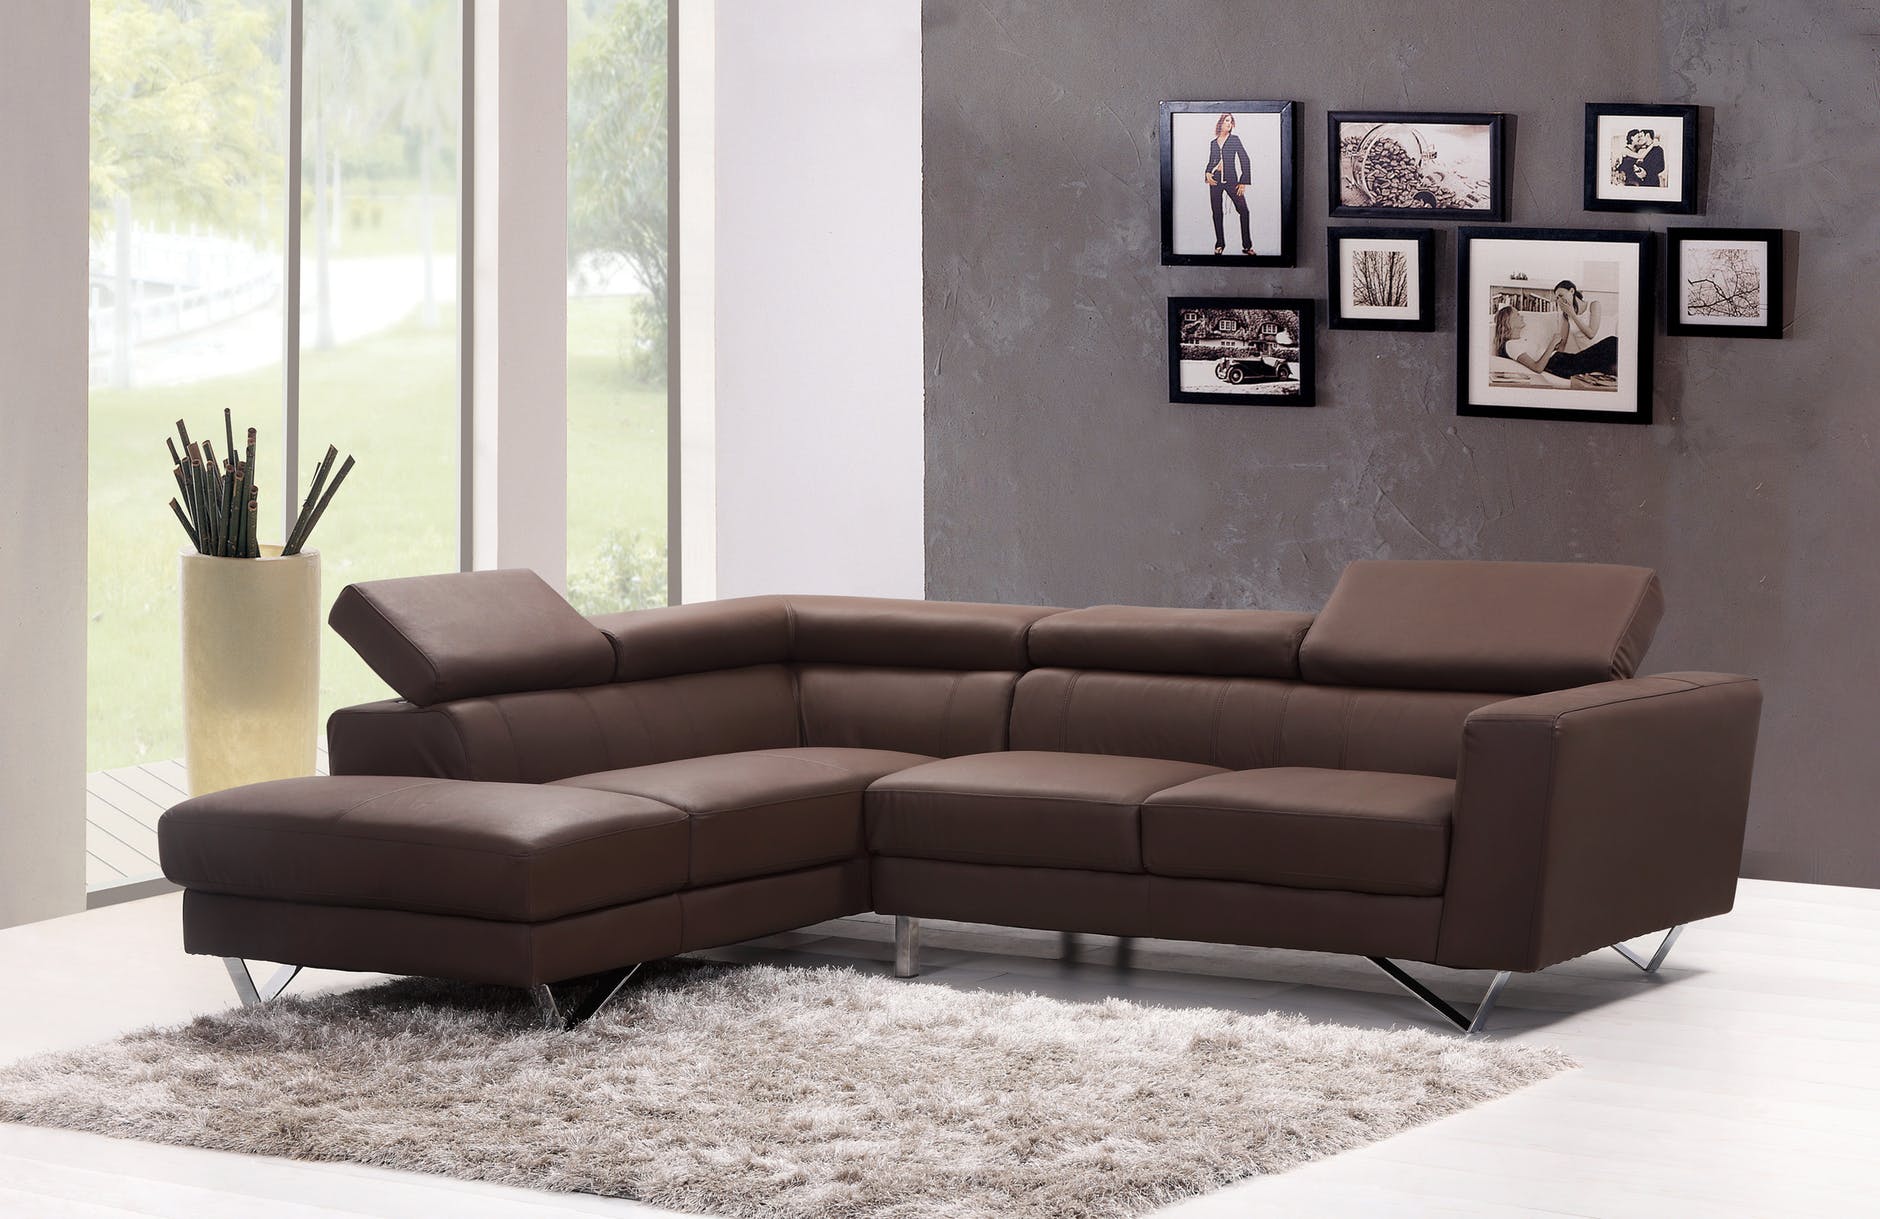 Sofa Set Designs For Small Living Room